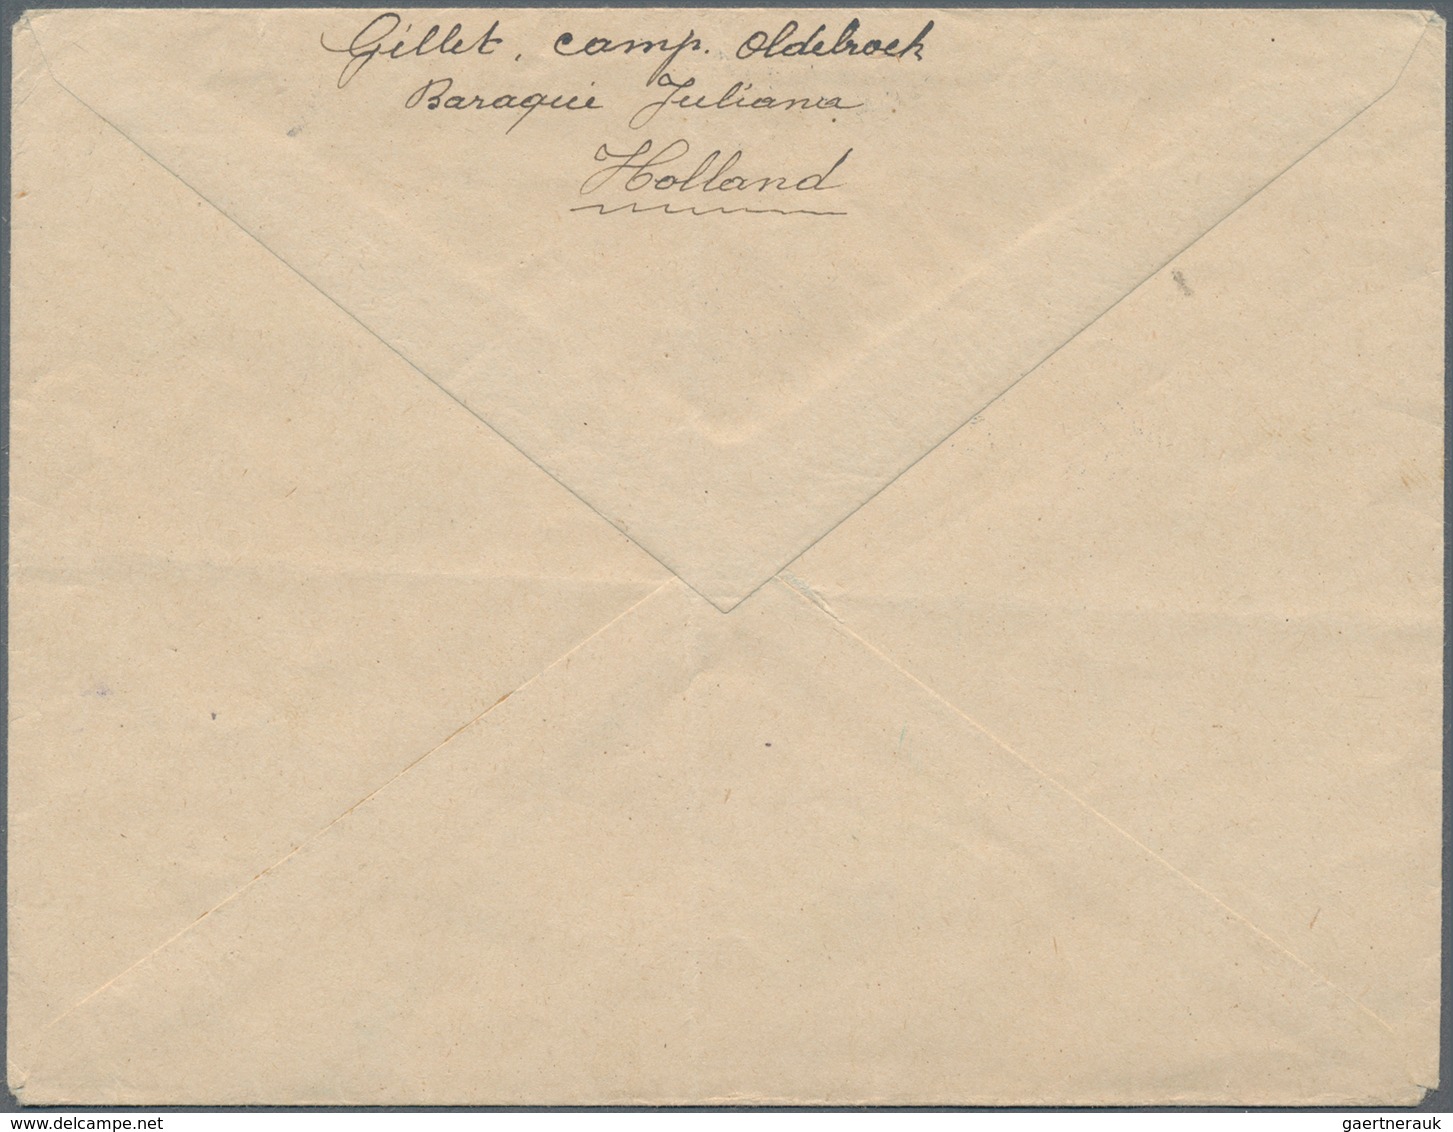 Niederlande - Portofreiheitsmarken: 1916, Internment Camp Stamp, Green, Tied By Dater LEGERPLAATS BI - Dienstmarken